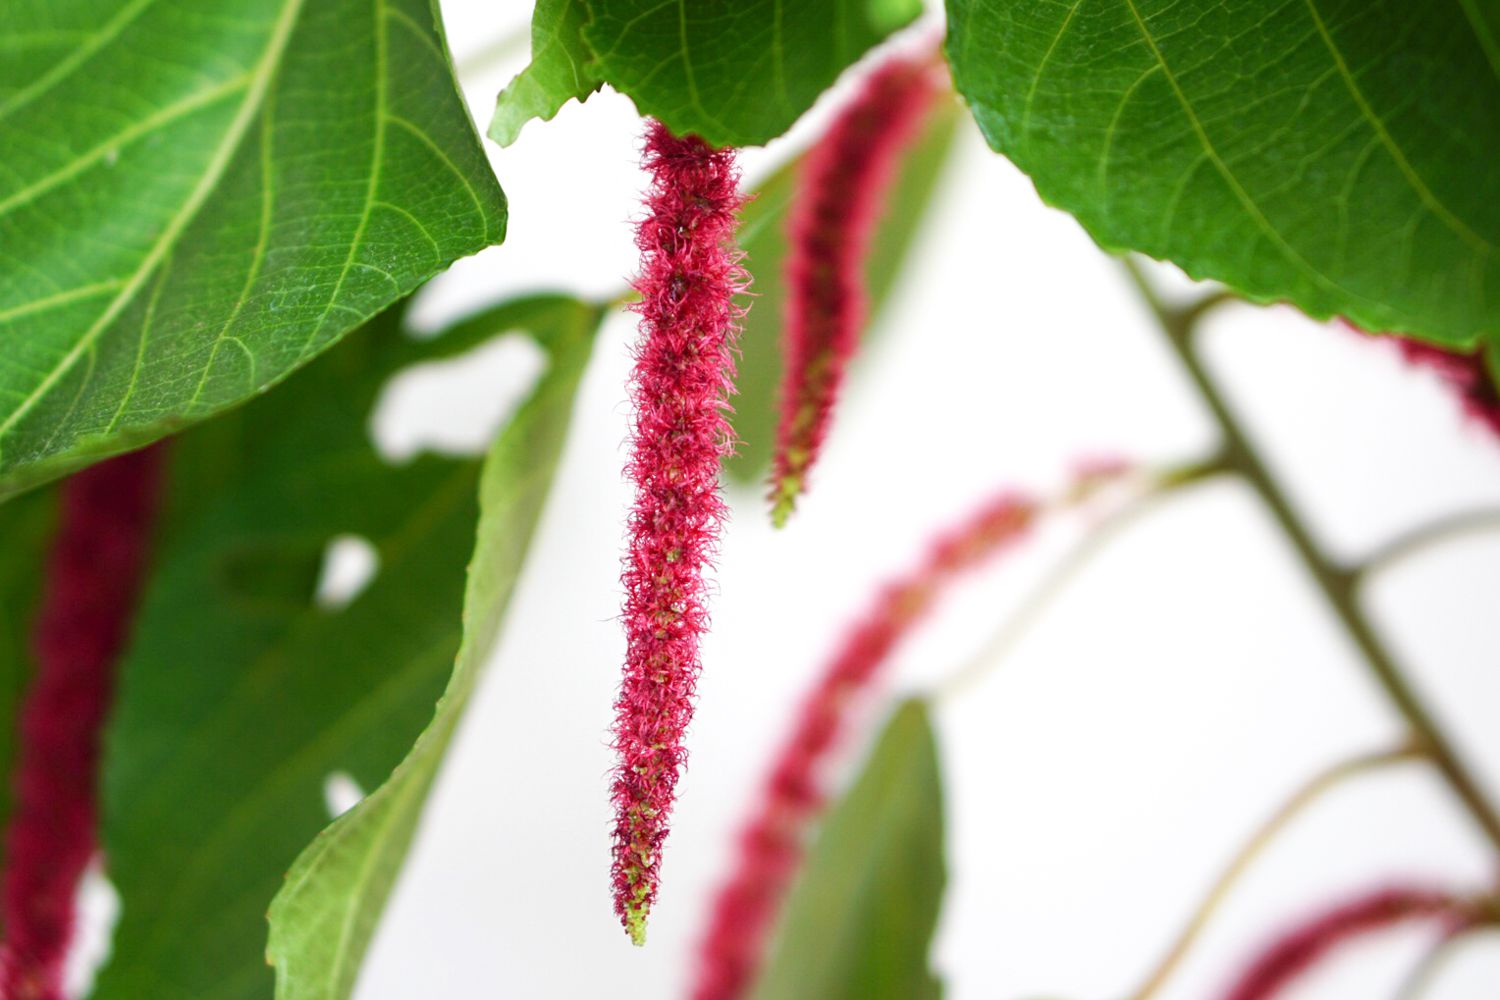 Planta Acalypha com flores vermelhas tipo escova de garrafa penduradas em close-up